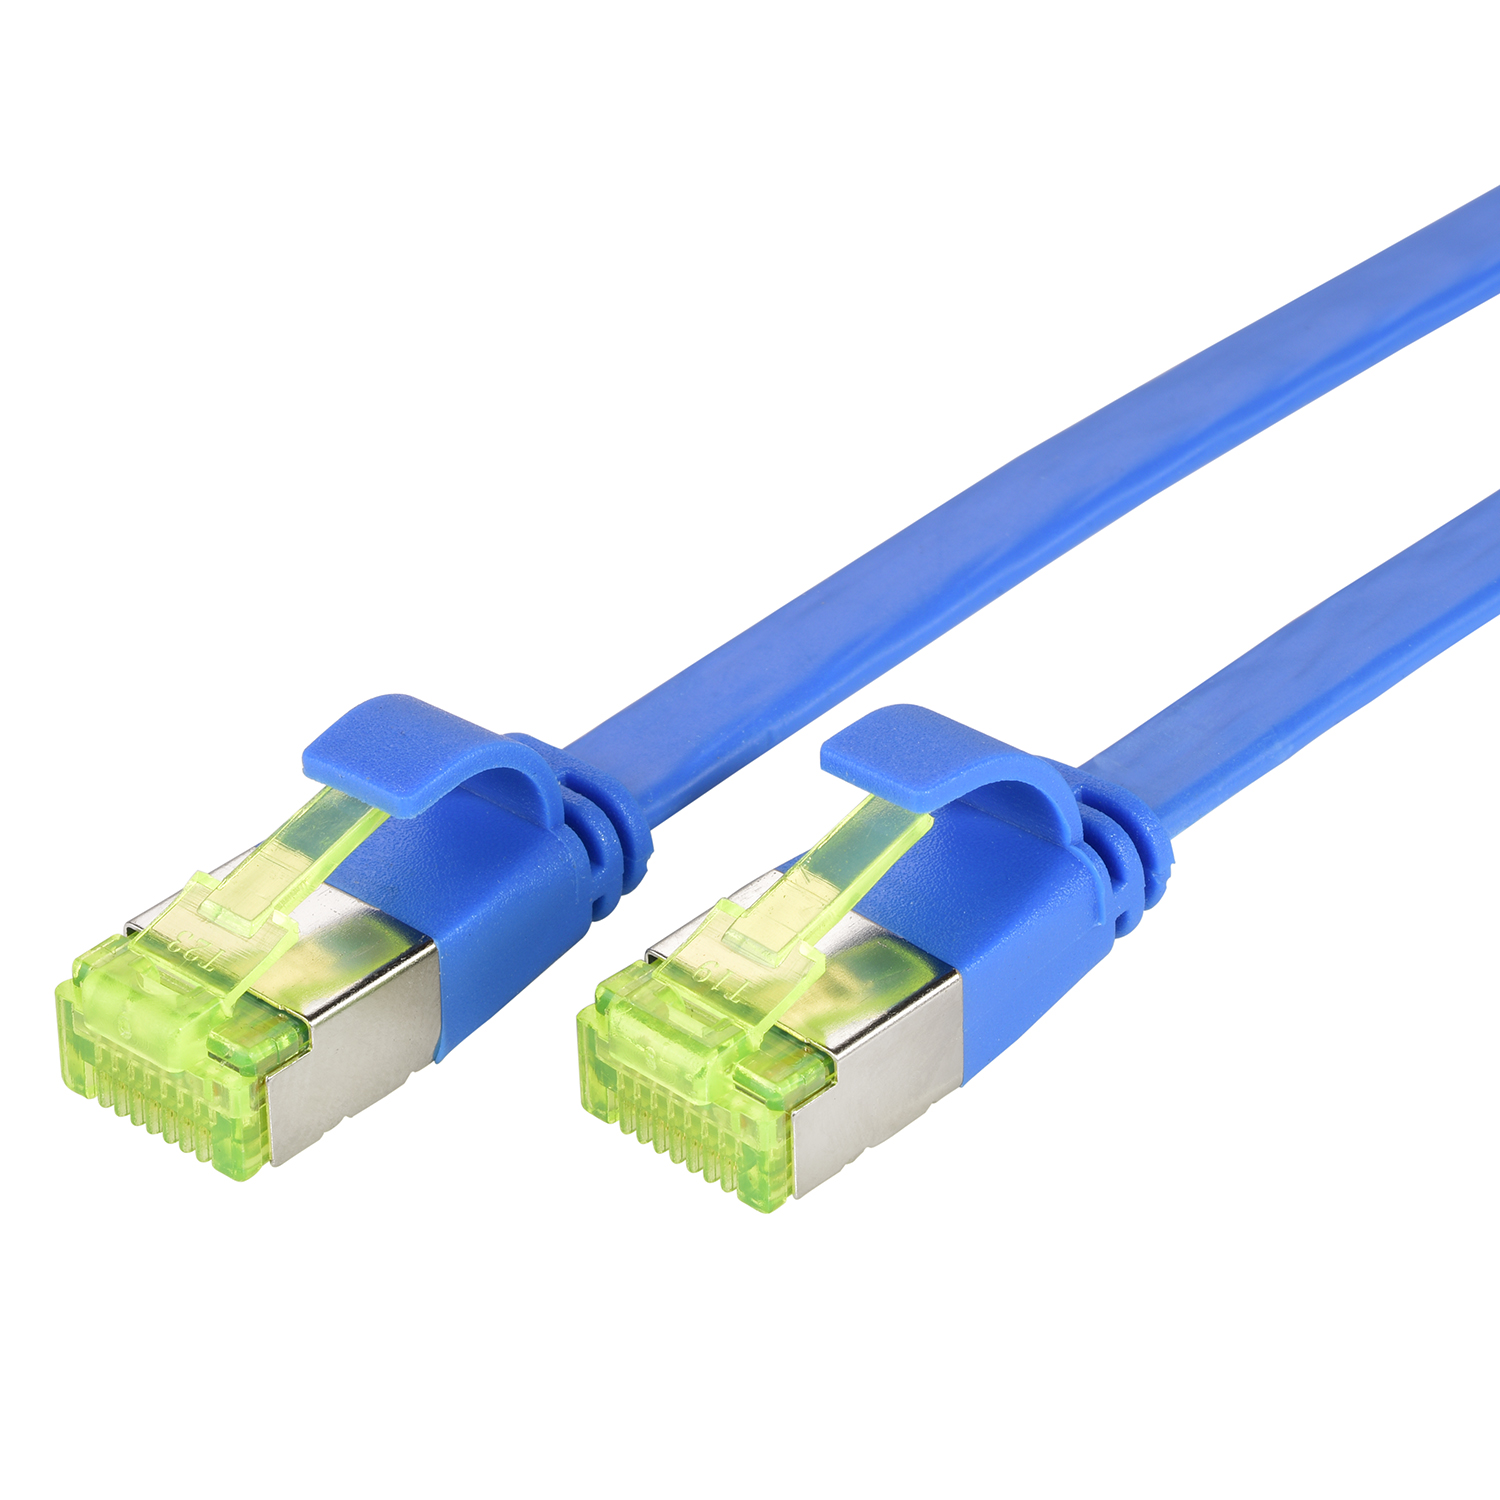 / Flachkabel 5 m GBit, 5m U/FTP TPFNET blau, Patchkabel Netzwerkkabel, 10